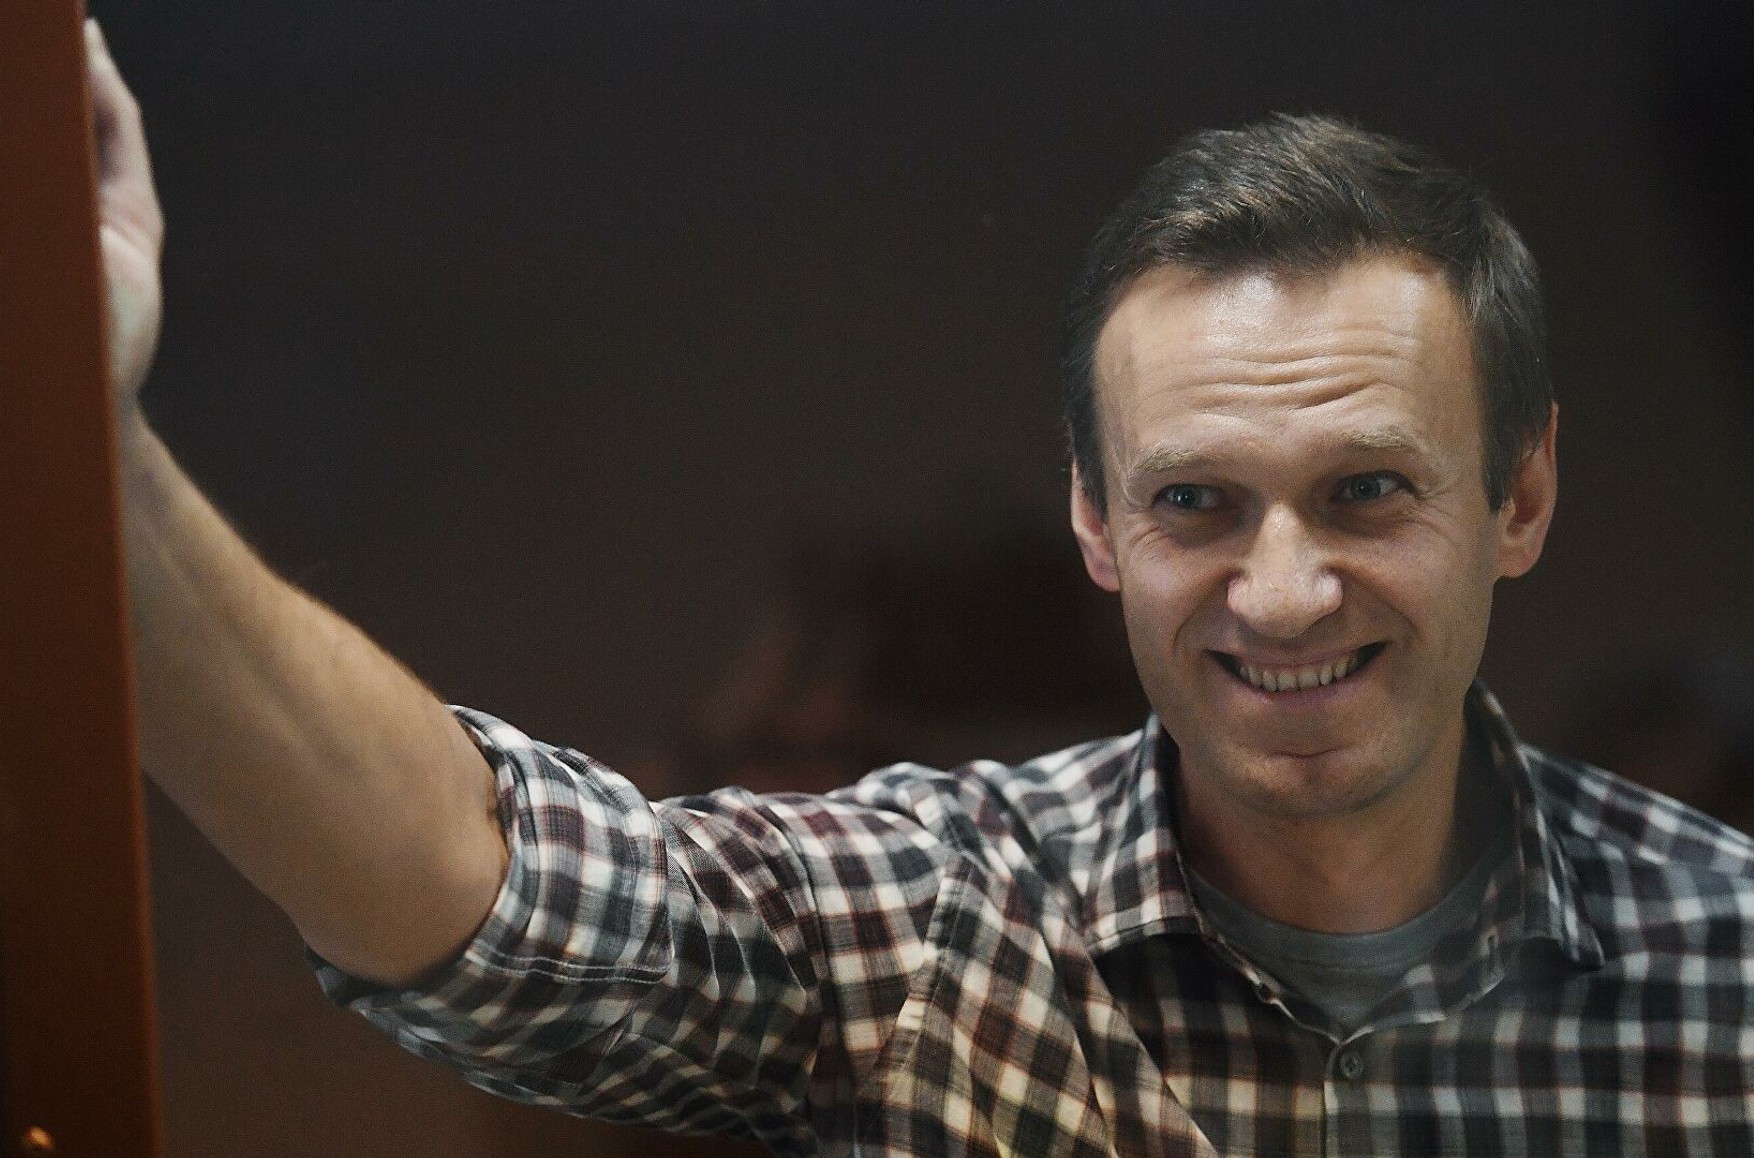 ФСВП підтвердила етапування Навального в колонію: «Він буде в нормальних умовах»